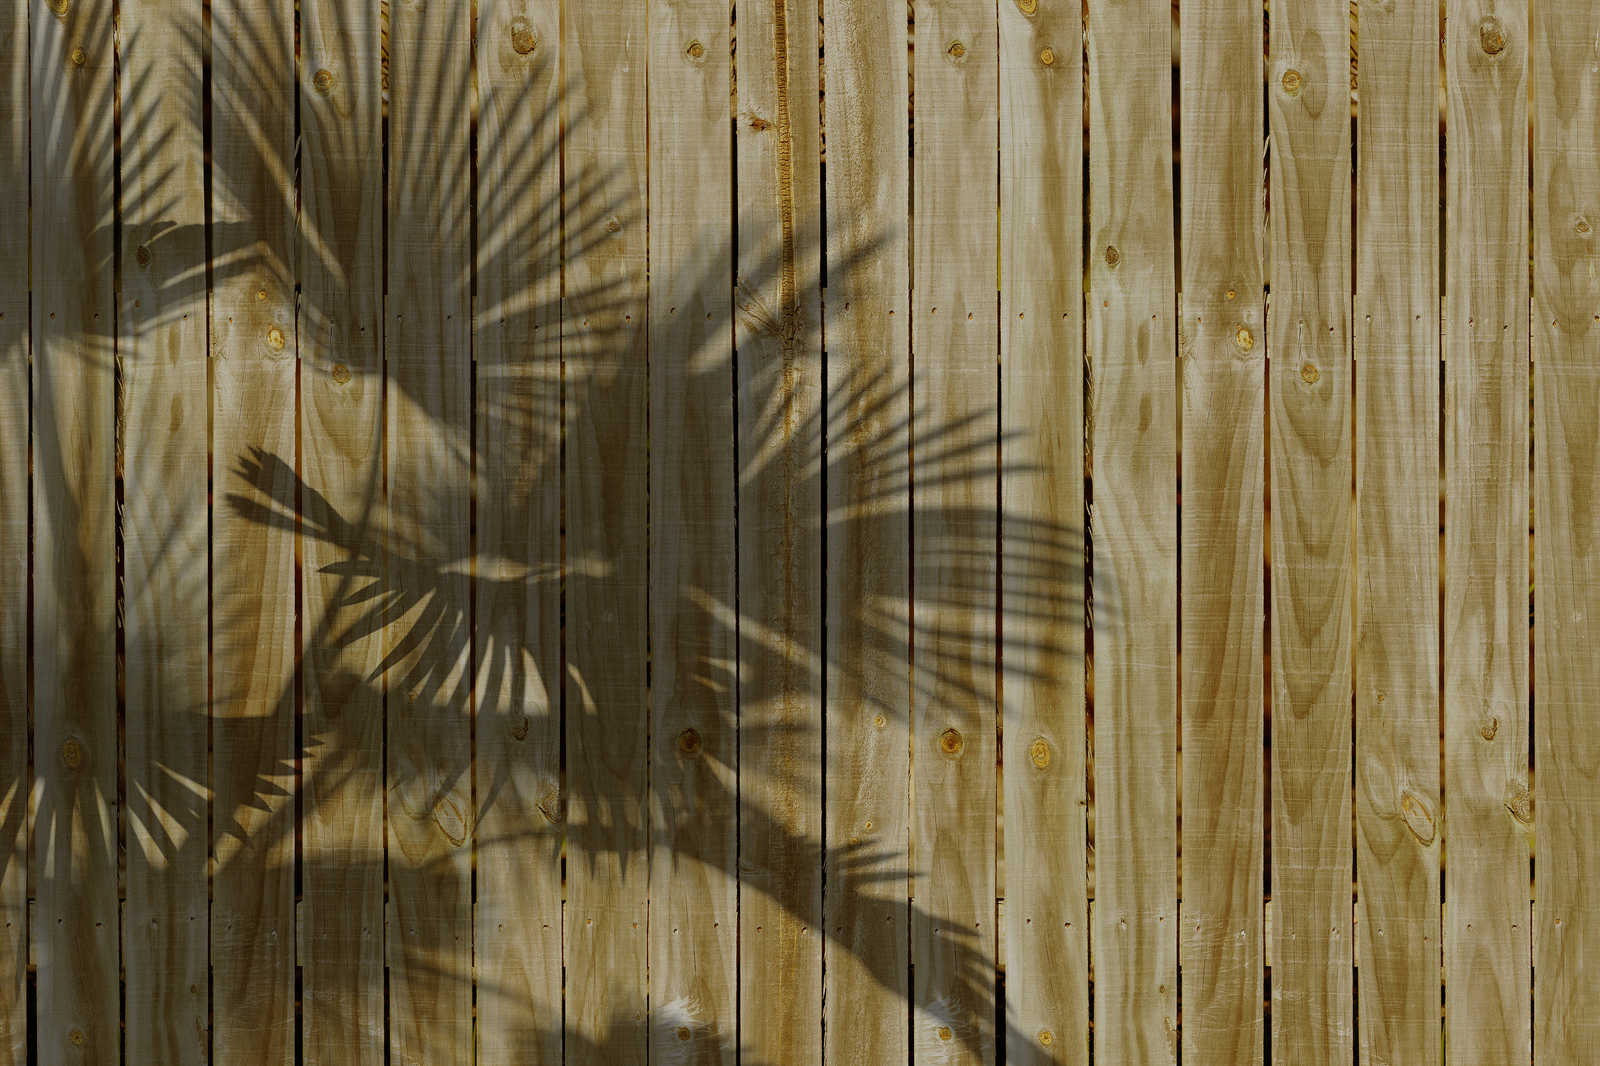             Cuadro en lienzo con aspecto de madera y sombra de hoja de palmera - 0,90 m x 0,60 m
        